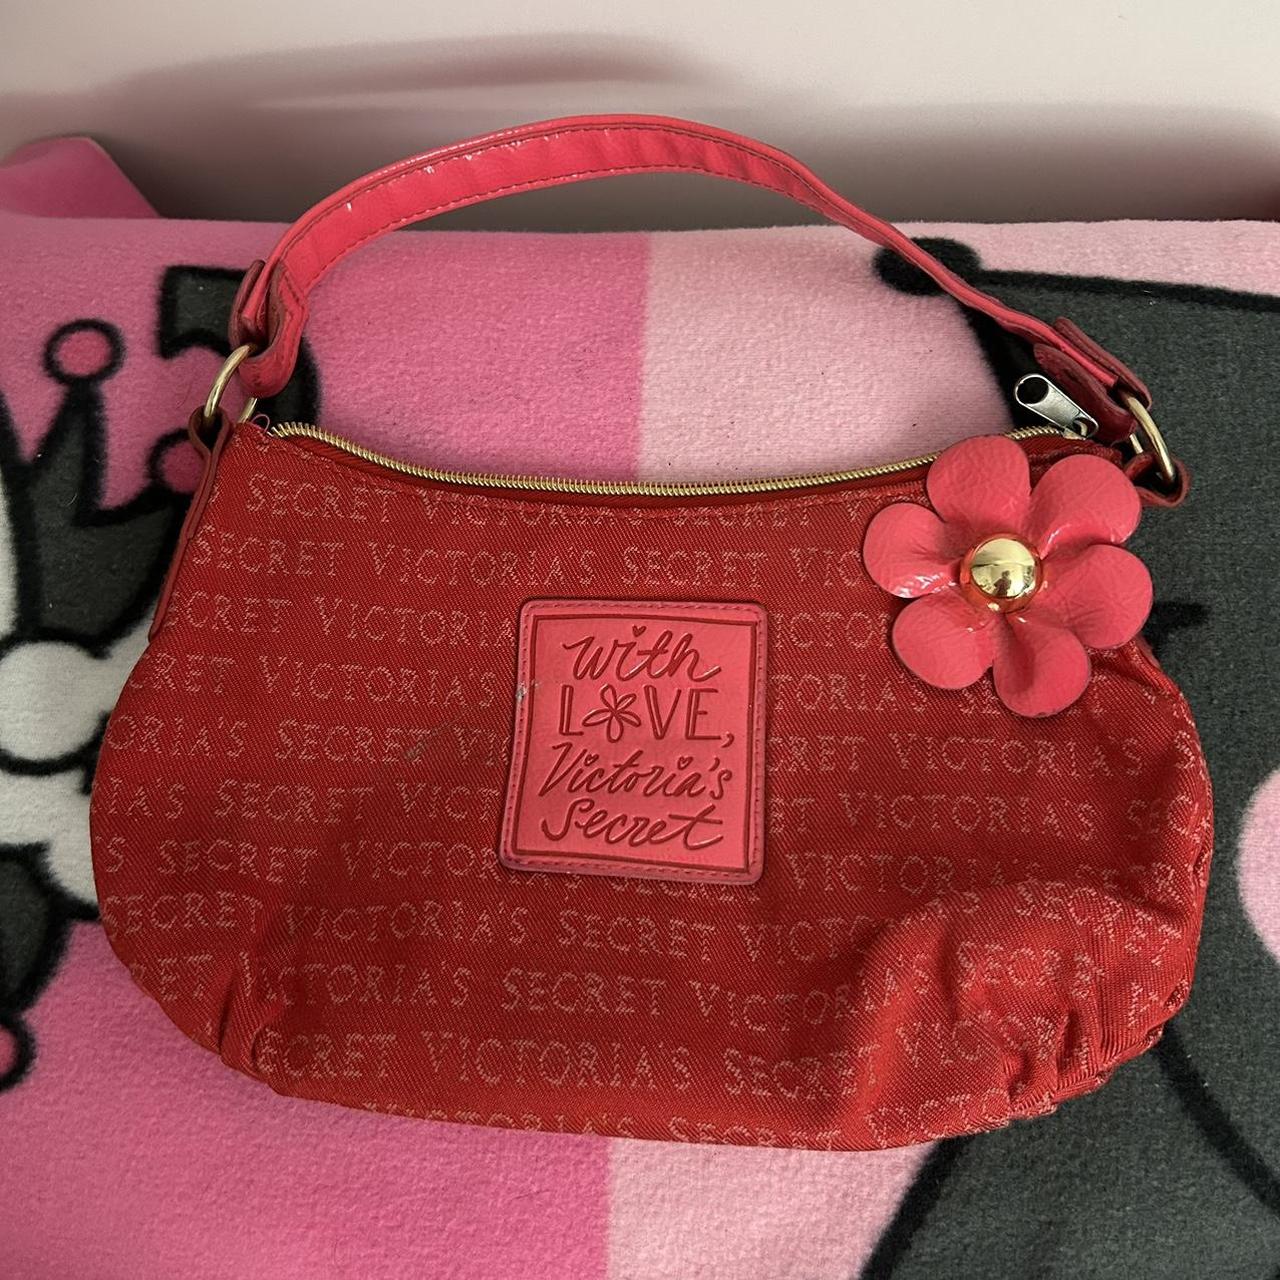 pink victoria secret sling bag